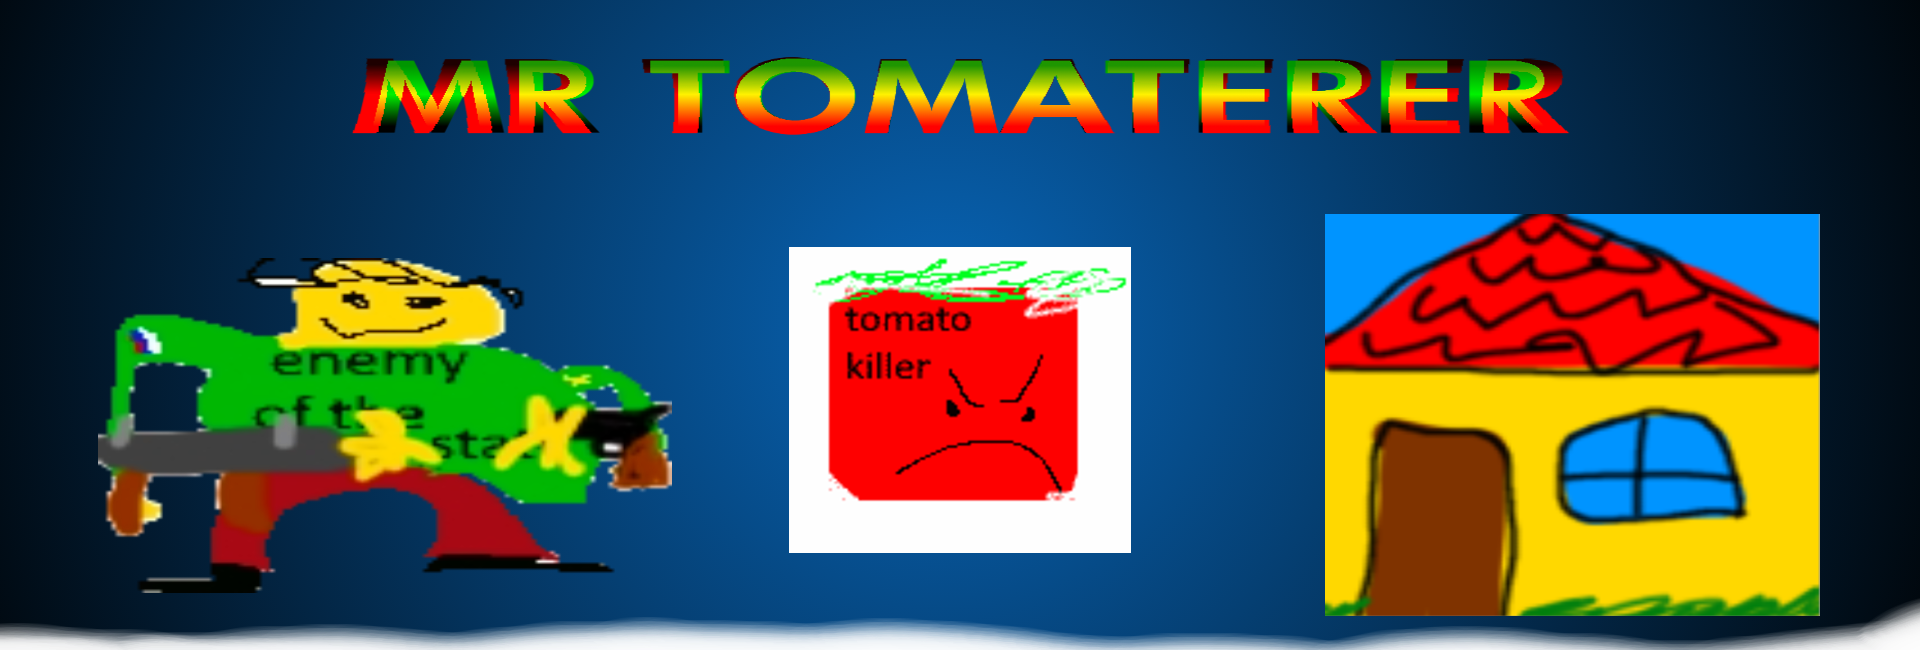 mr tomaterer